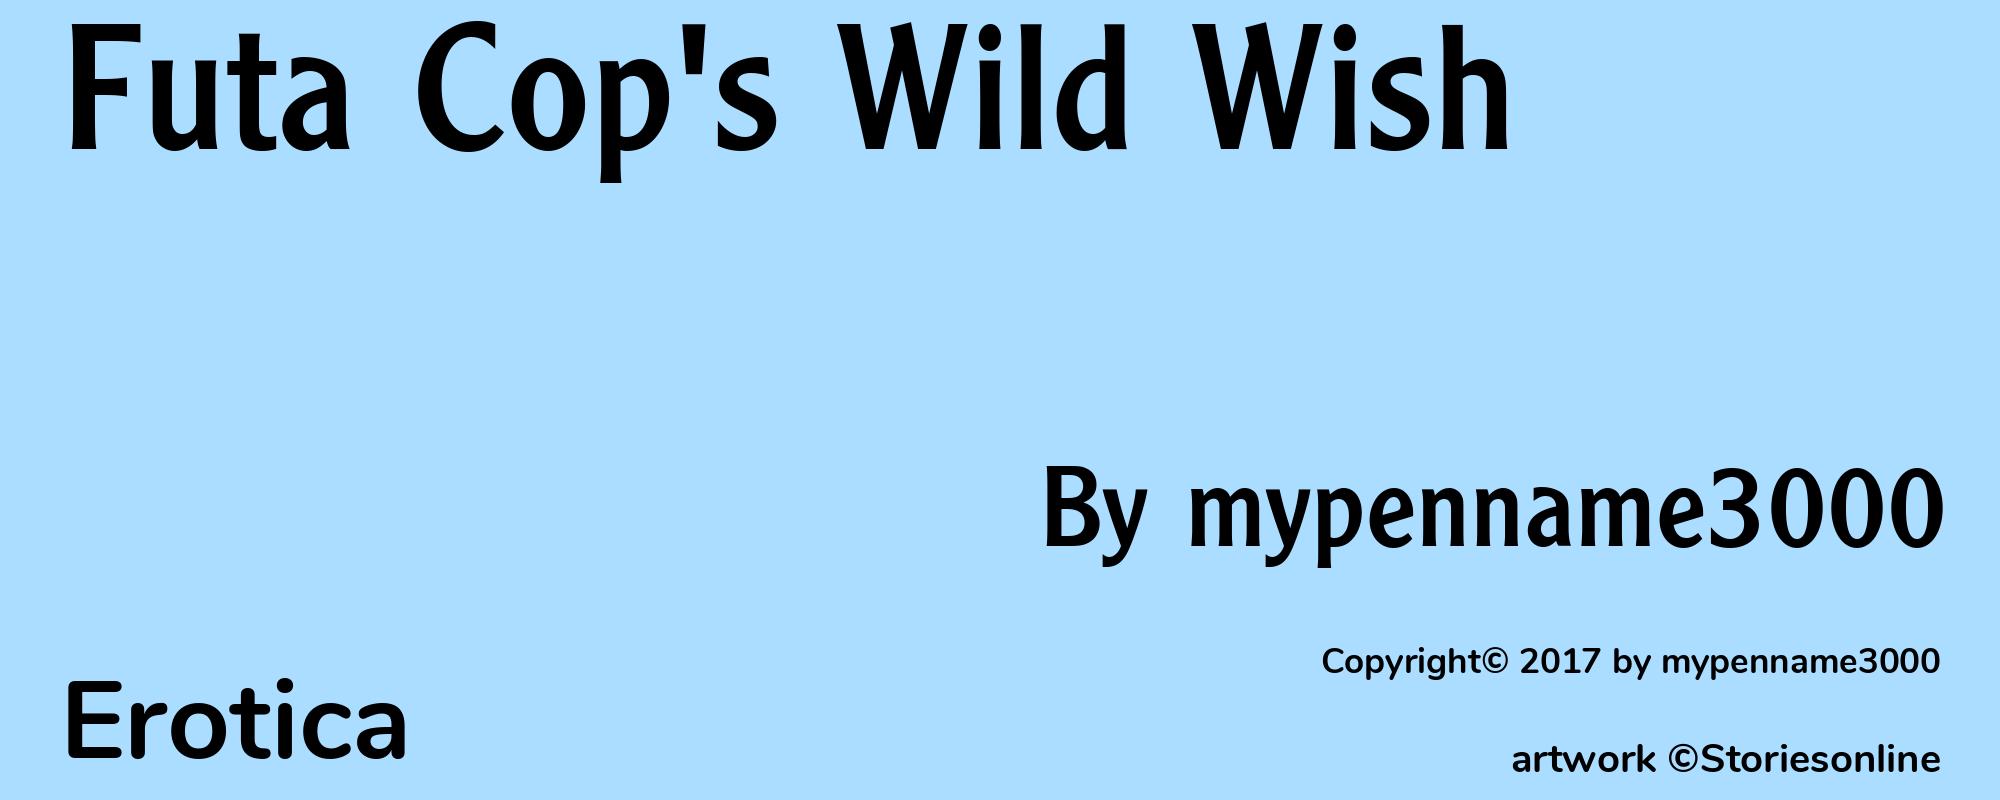 Futa Cop's Wild Wish - Cover